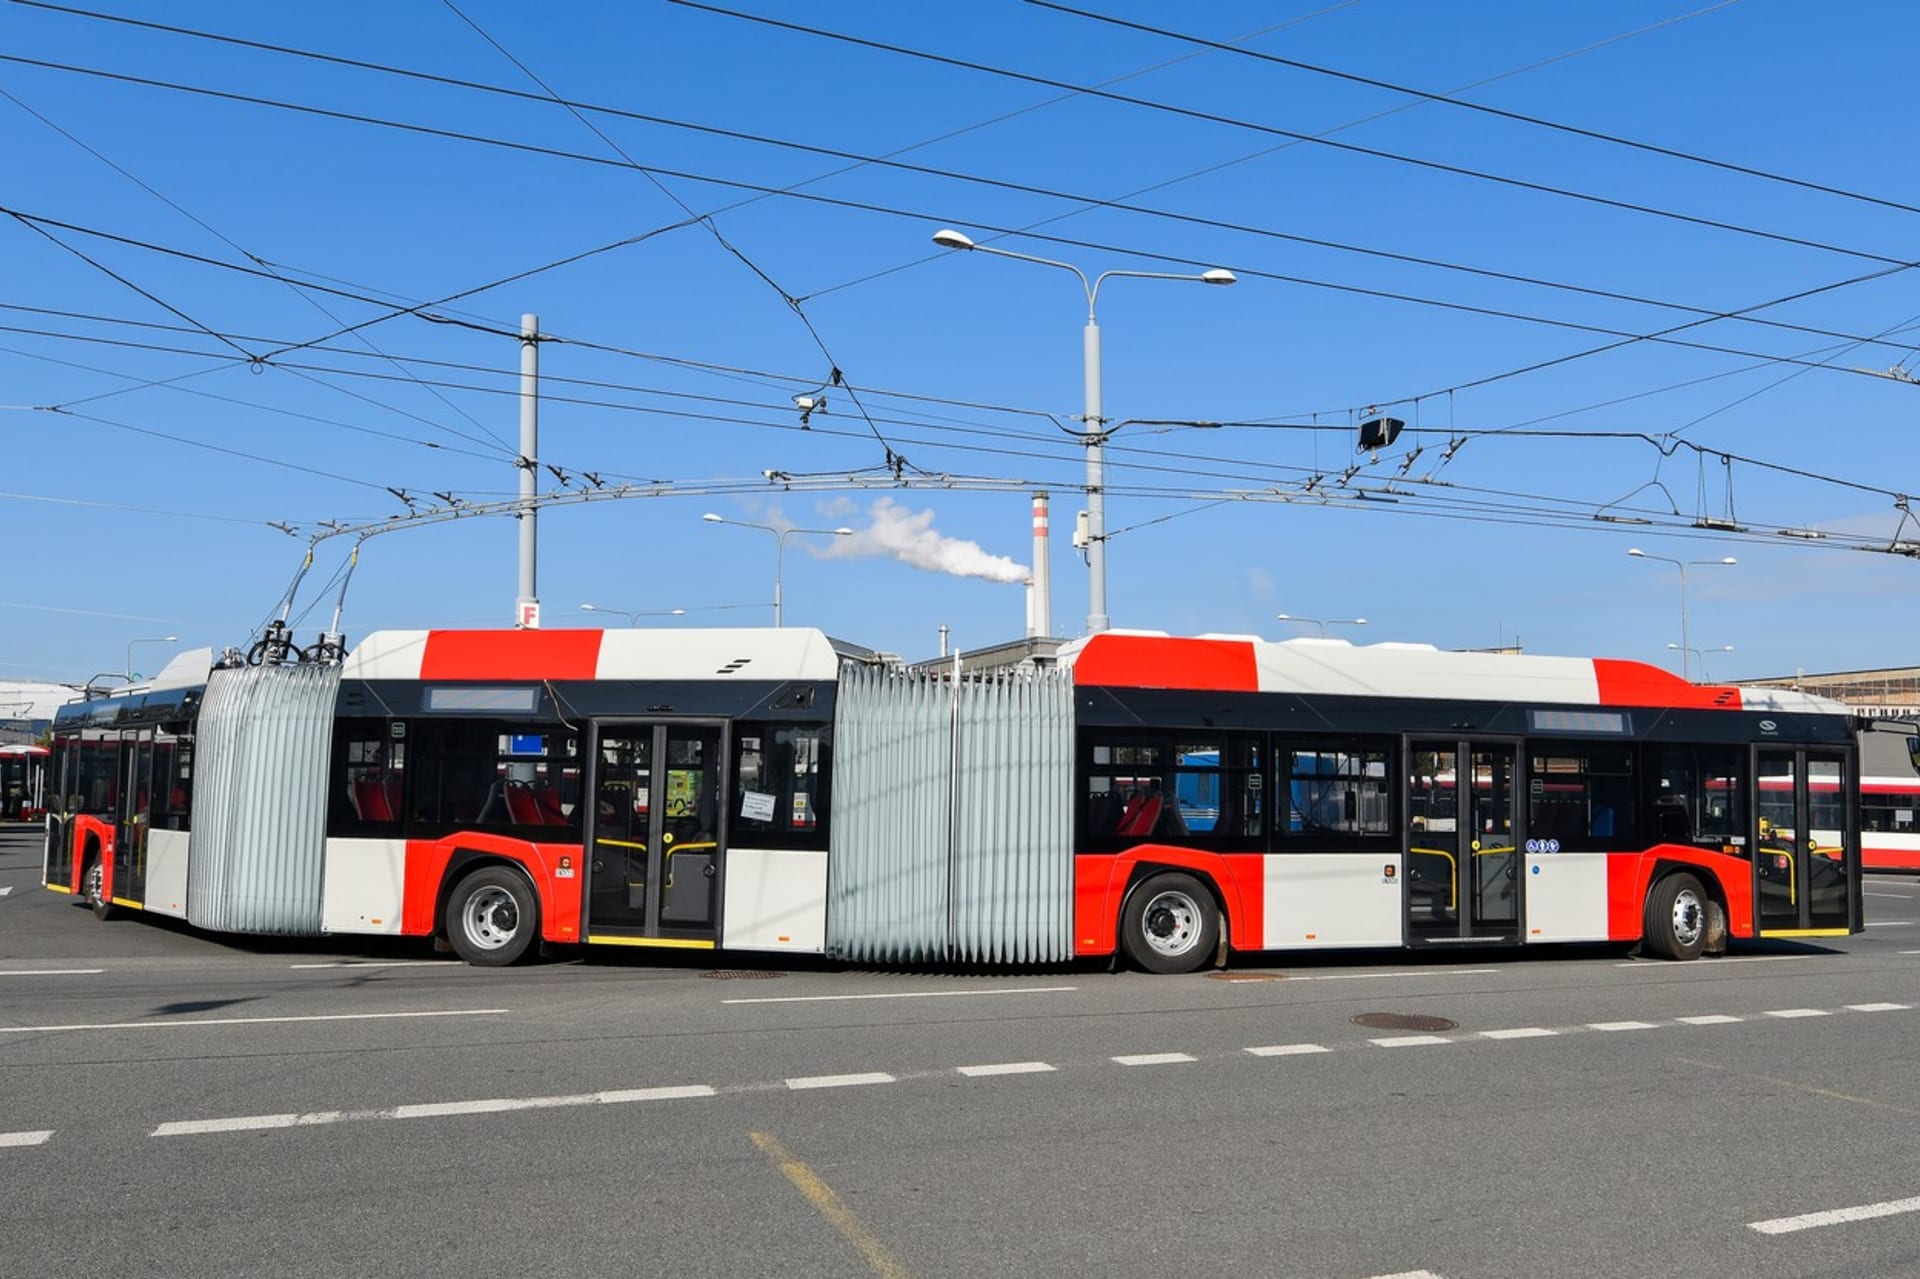 Velkokapacitní čtyřiadvacetimetrový trolejbus Škoda Solaris 